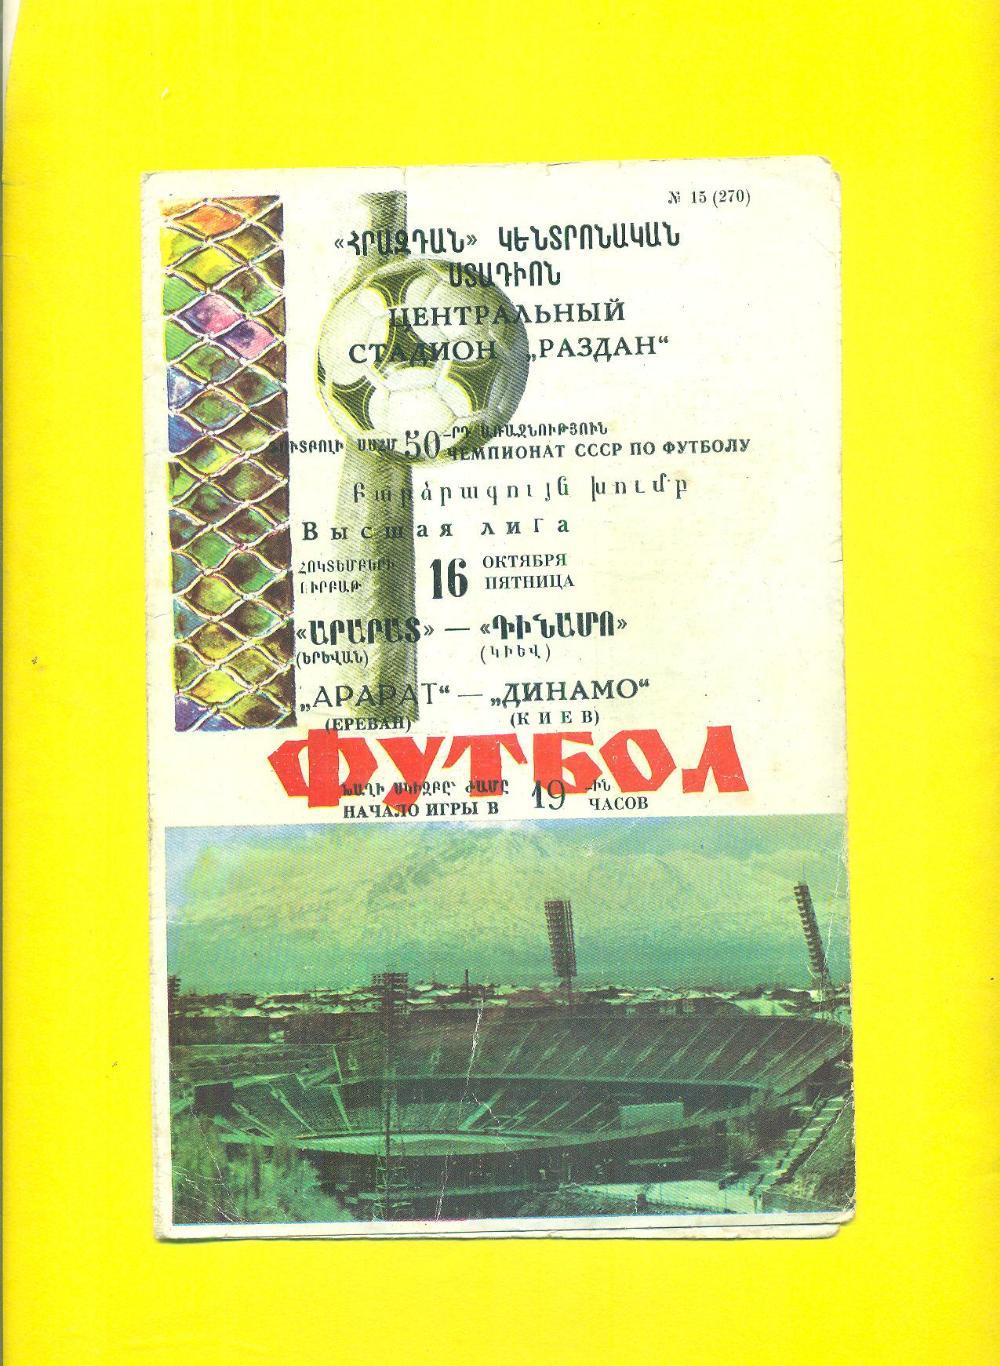 Арарат Ереван-Динамо Киев-1987